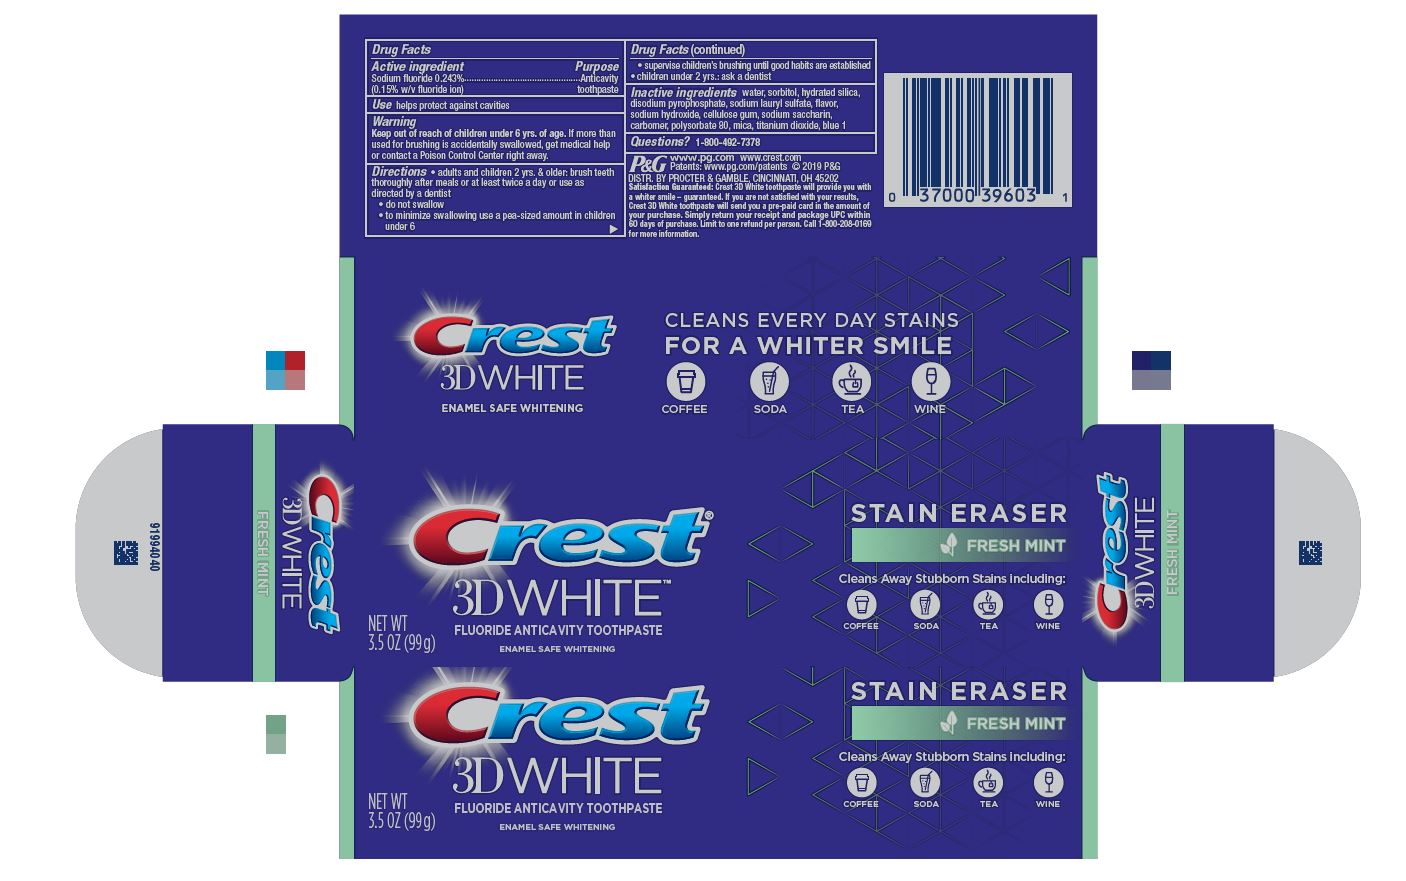 Crest 3D White Stain Eraser